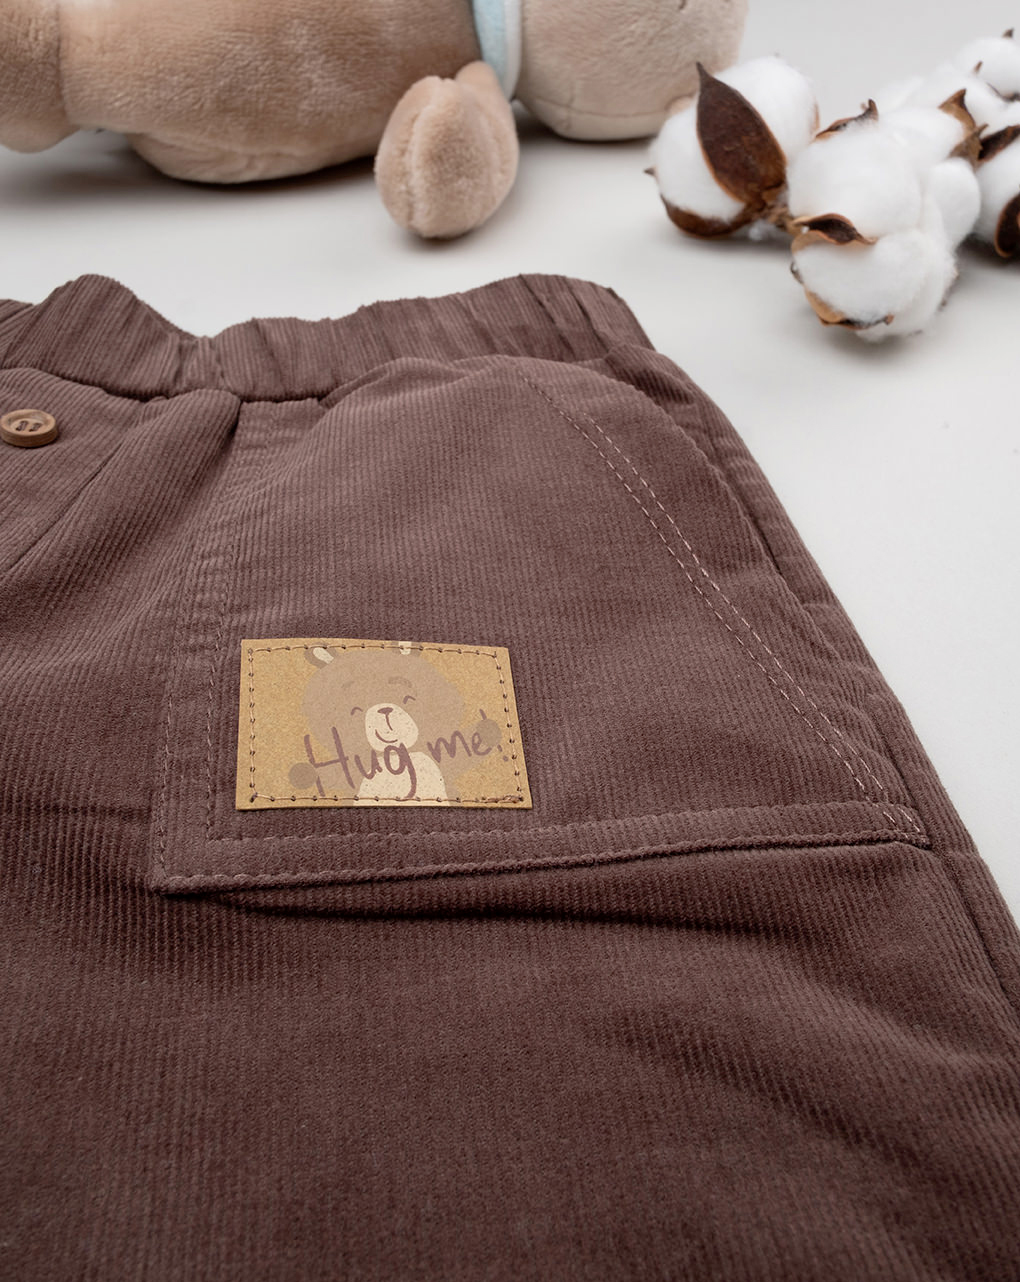 βρεφικό παντελόνι βελουτέ καφέ wood για αγόρι - Prénatal